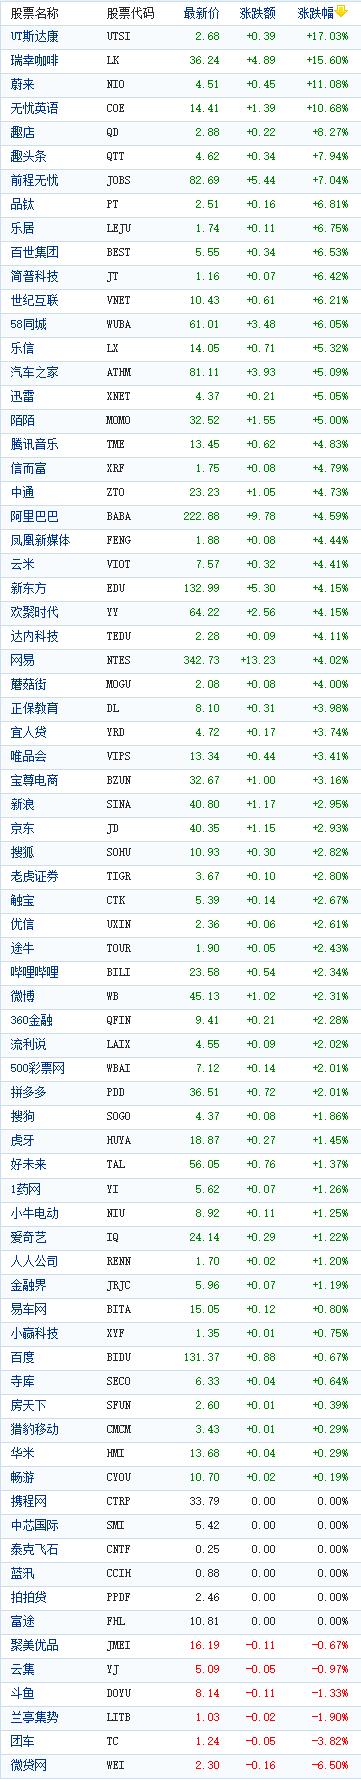 中国概念股周二收盘普遍上涨 瑞幸咖啡大涨逾15%